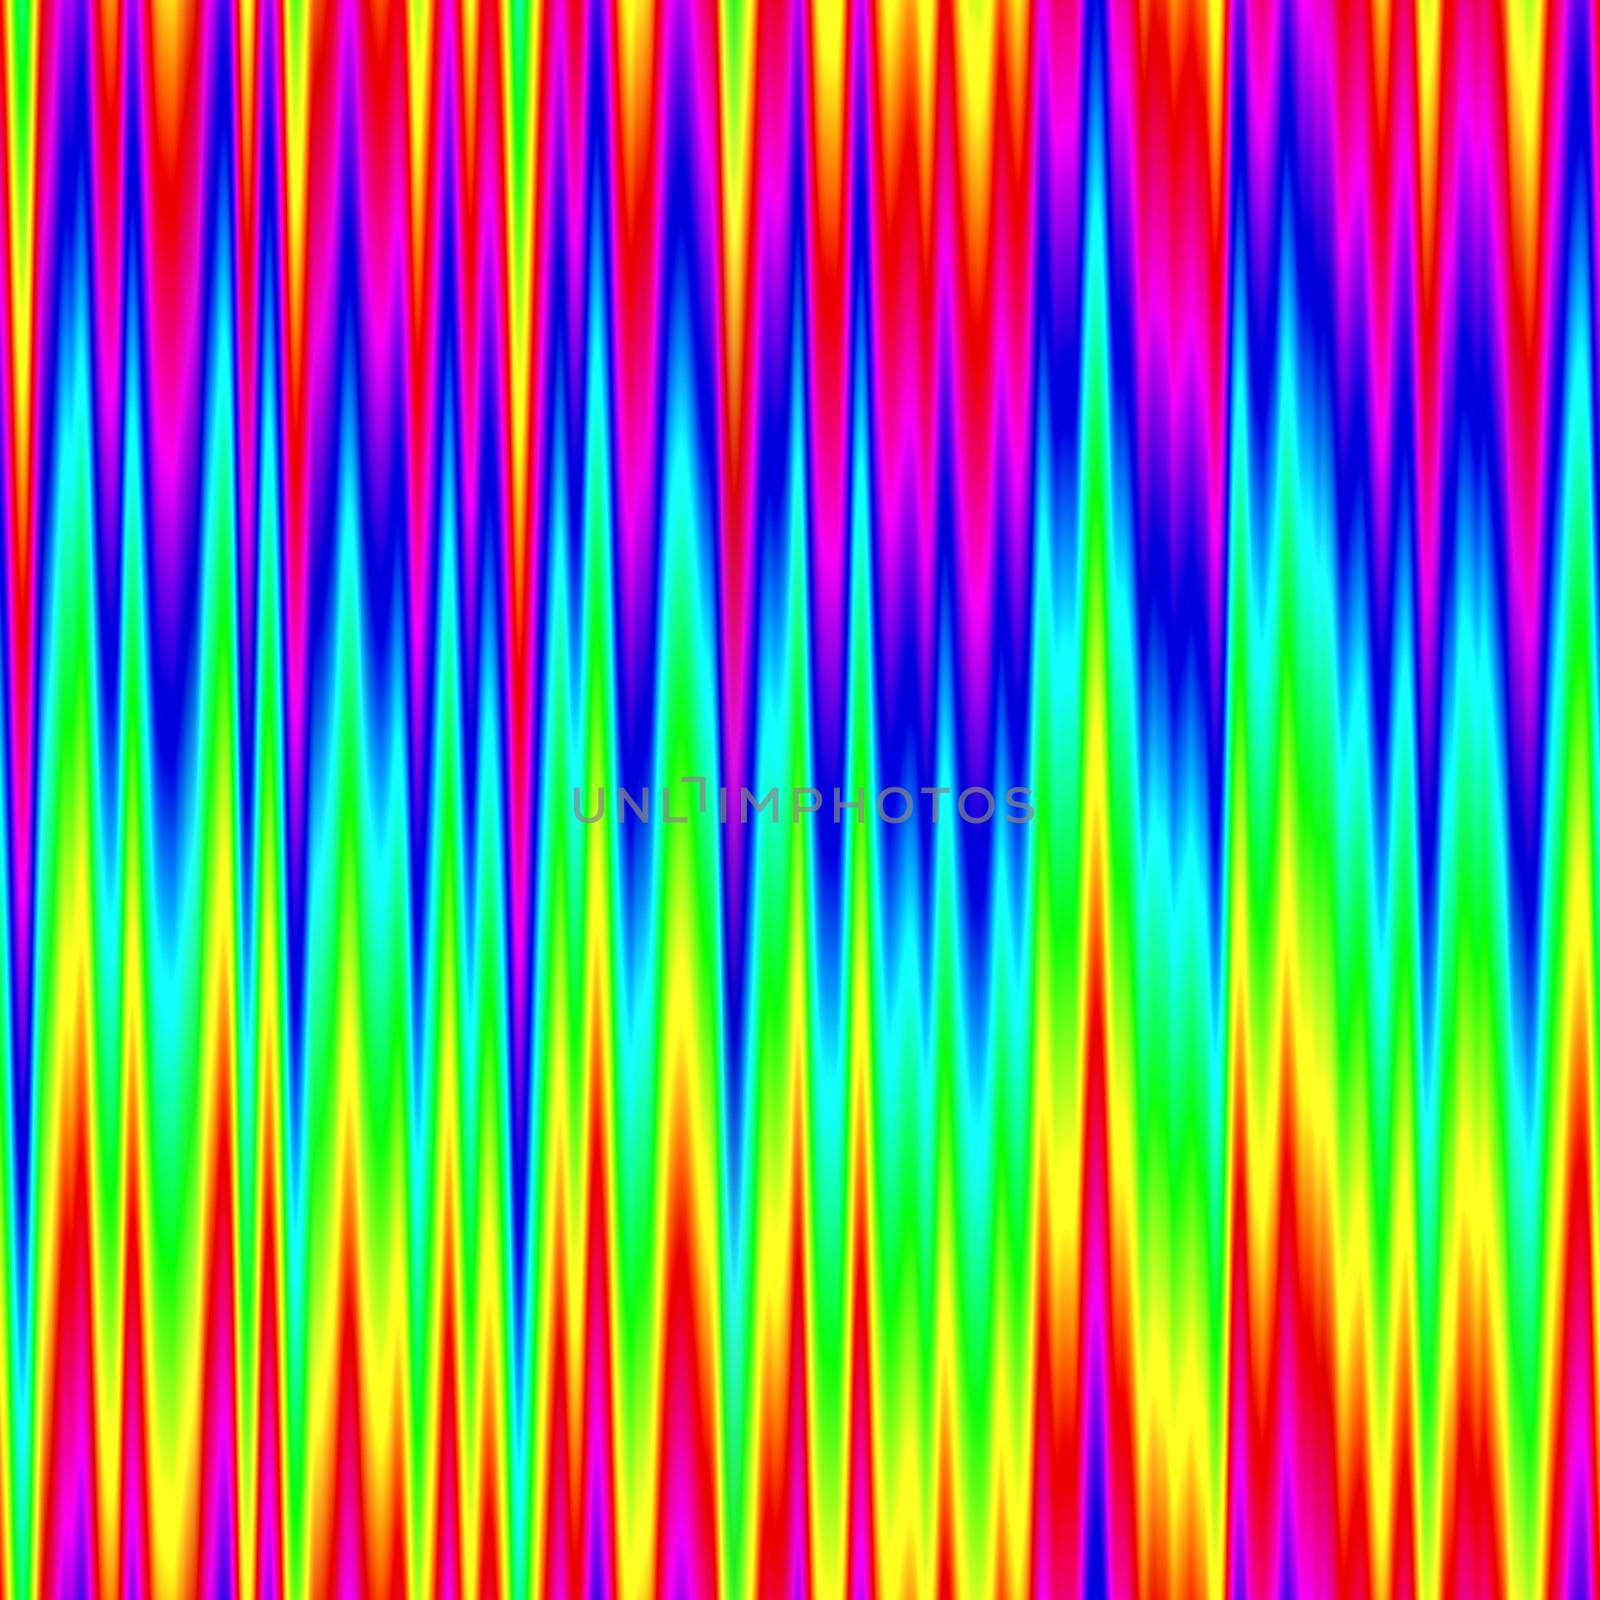 sl rainbow zigzag by hospitalera